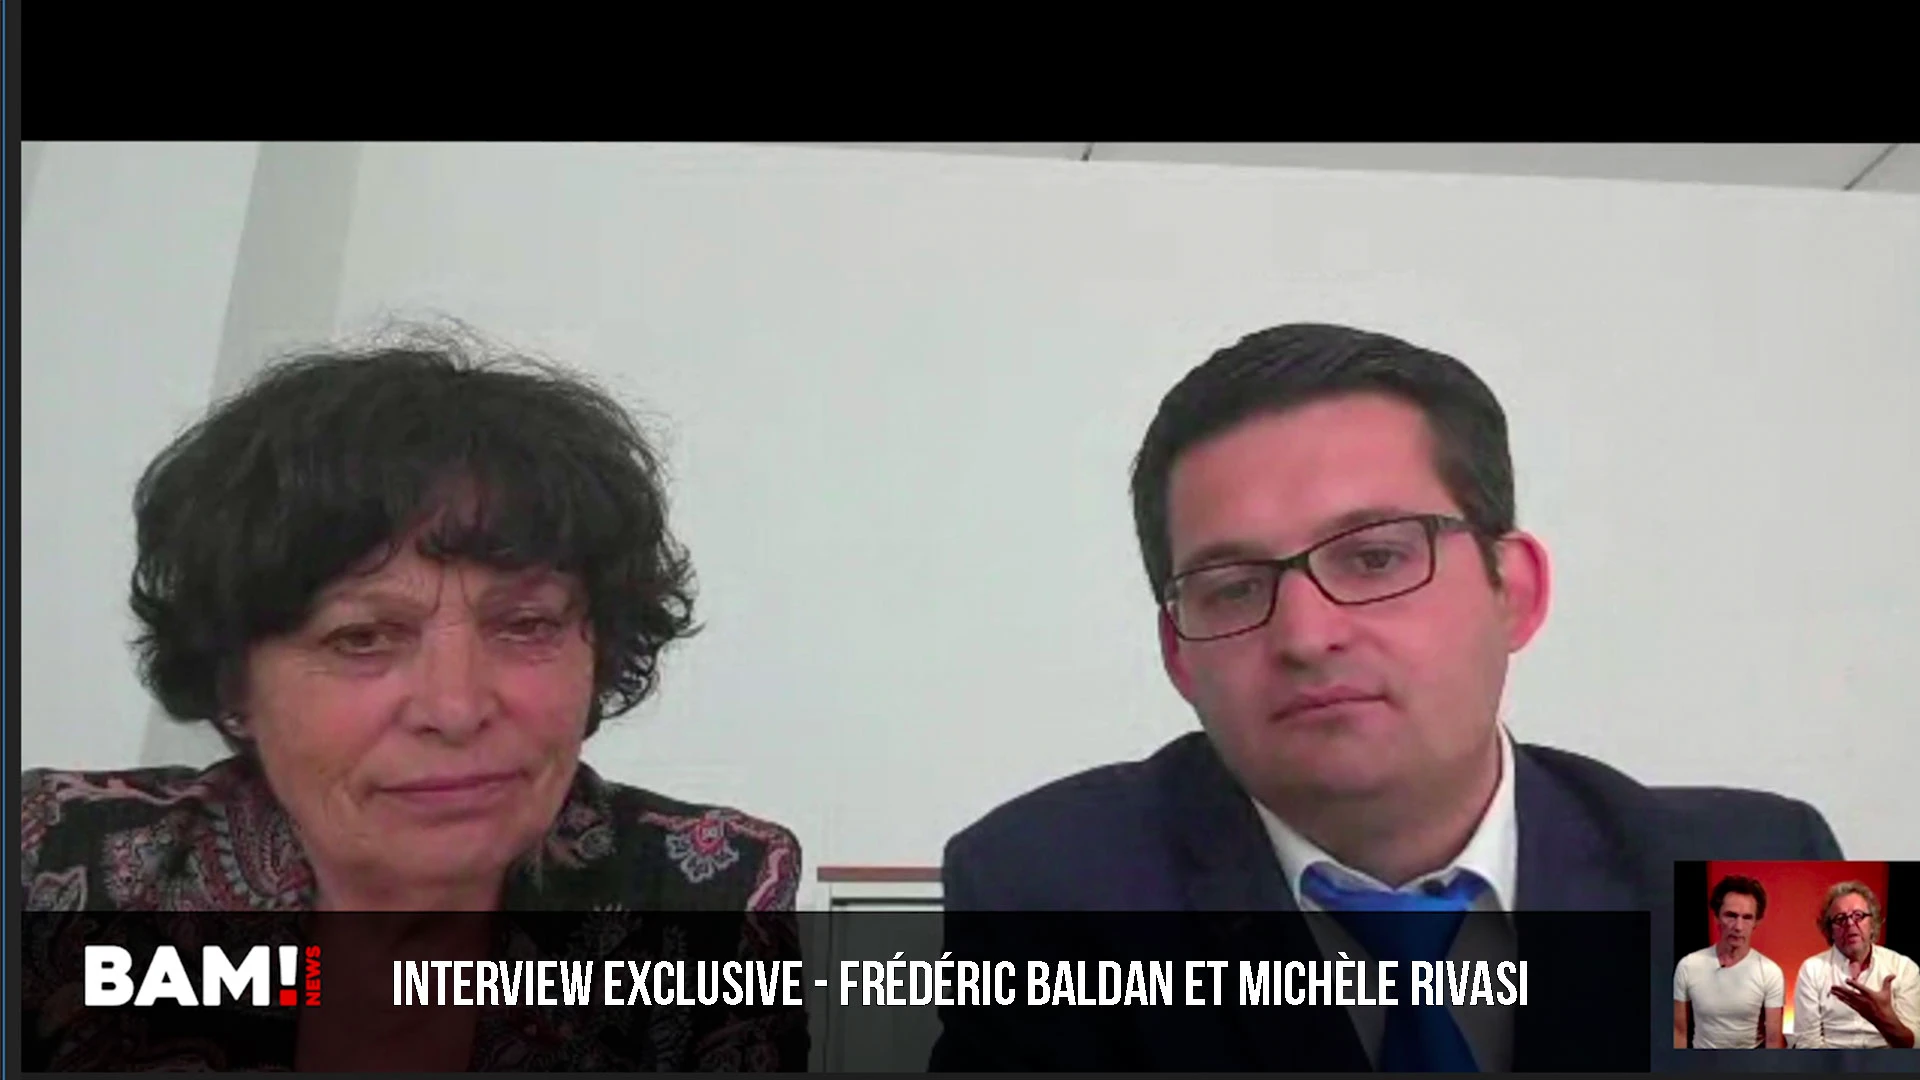 Interview exclusive – Frédéric Baldan veut la mise à pied immédiate de Ursula Von der Leyen!